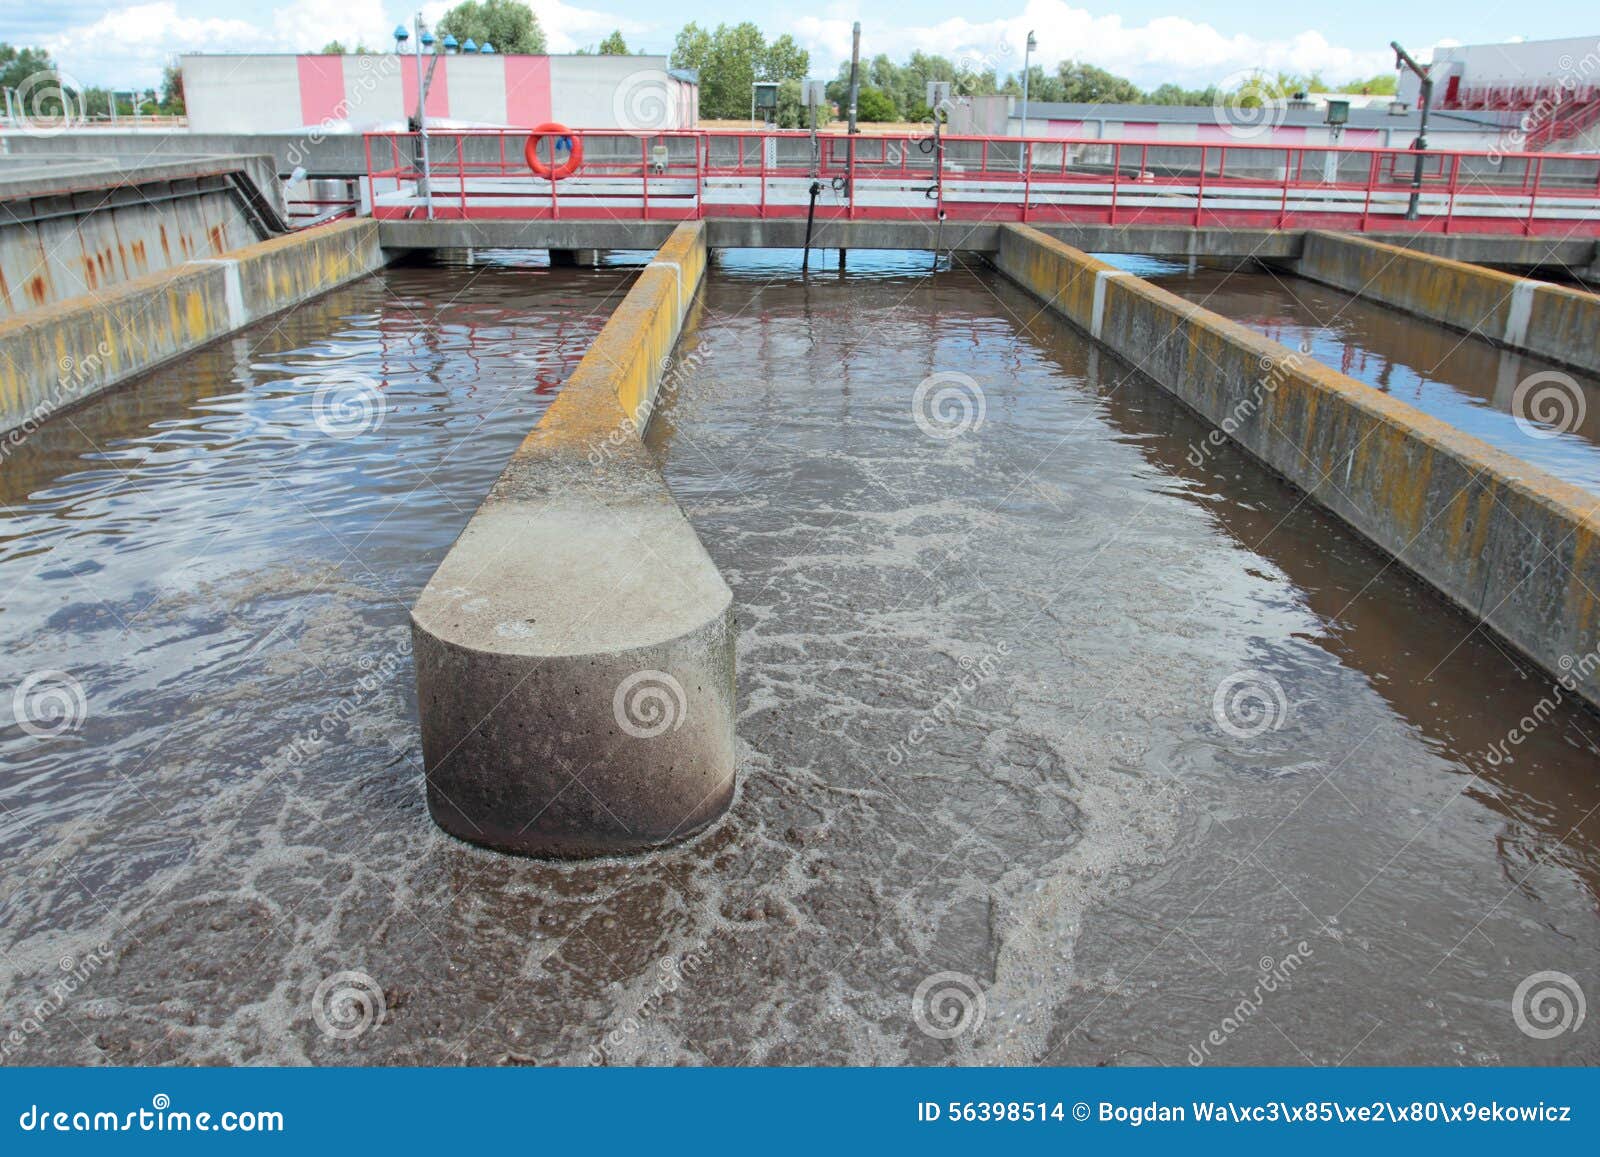 Sewage treatment plant stock photo. Image of blackwater - 56398514